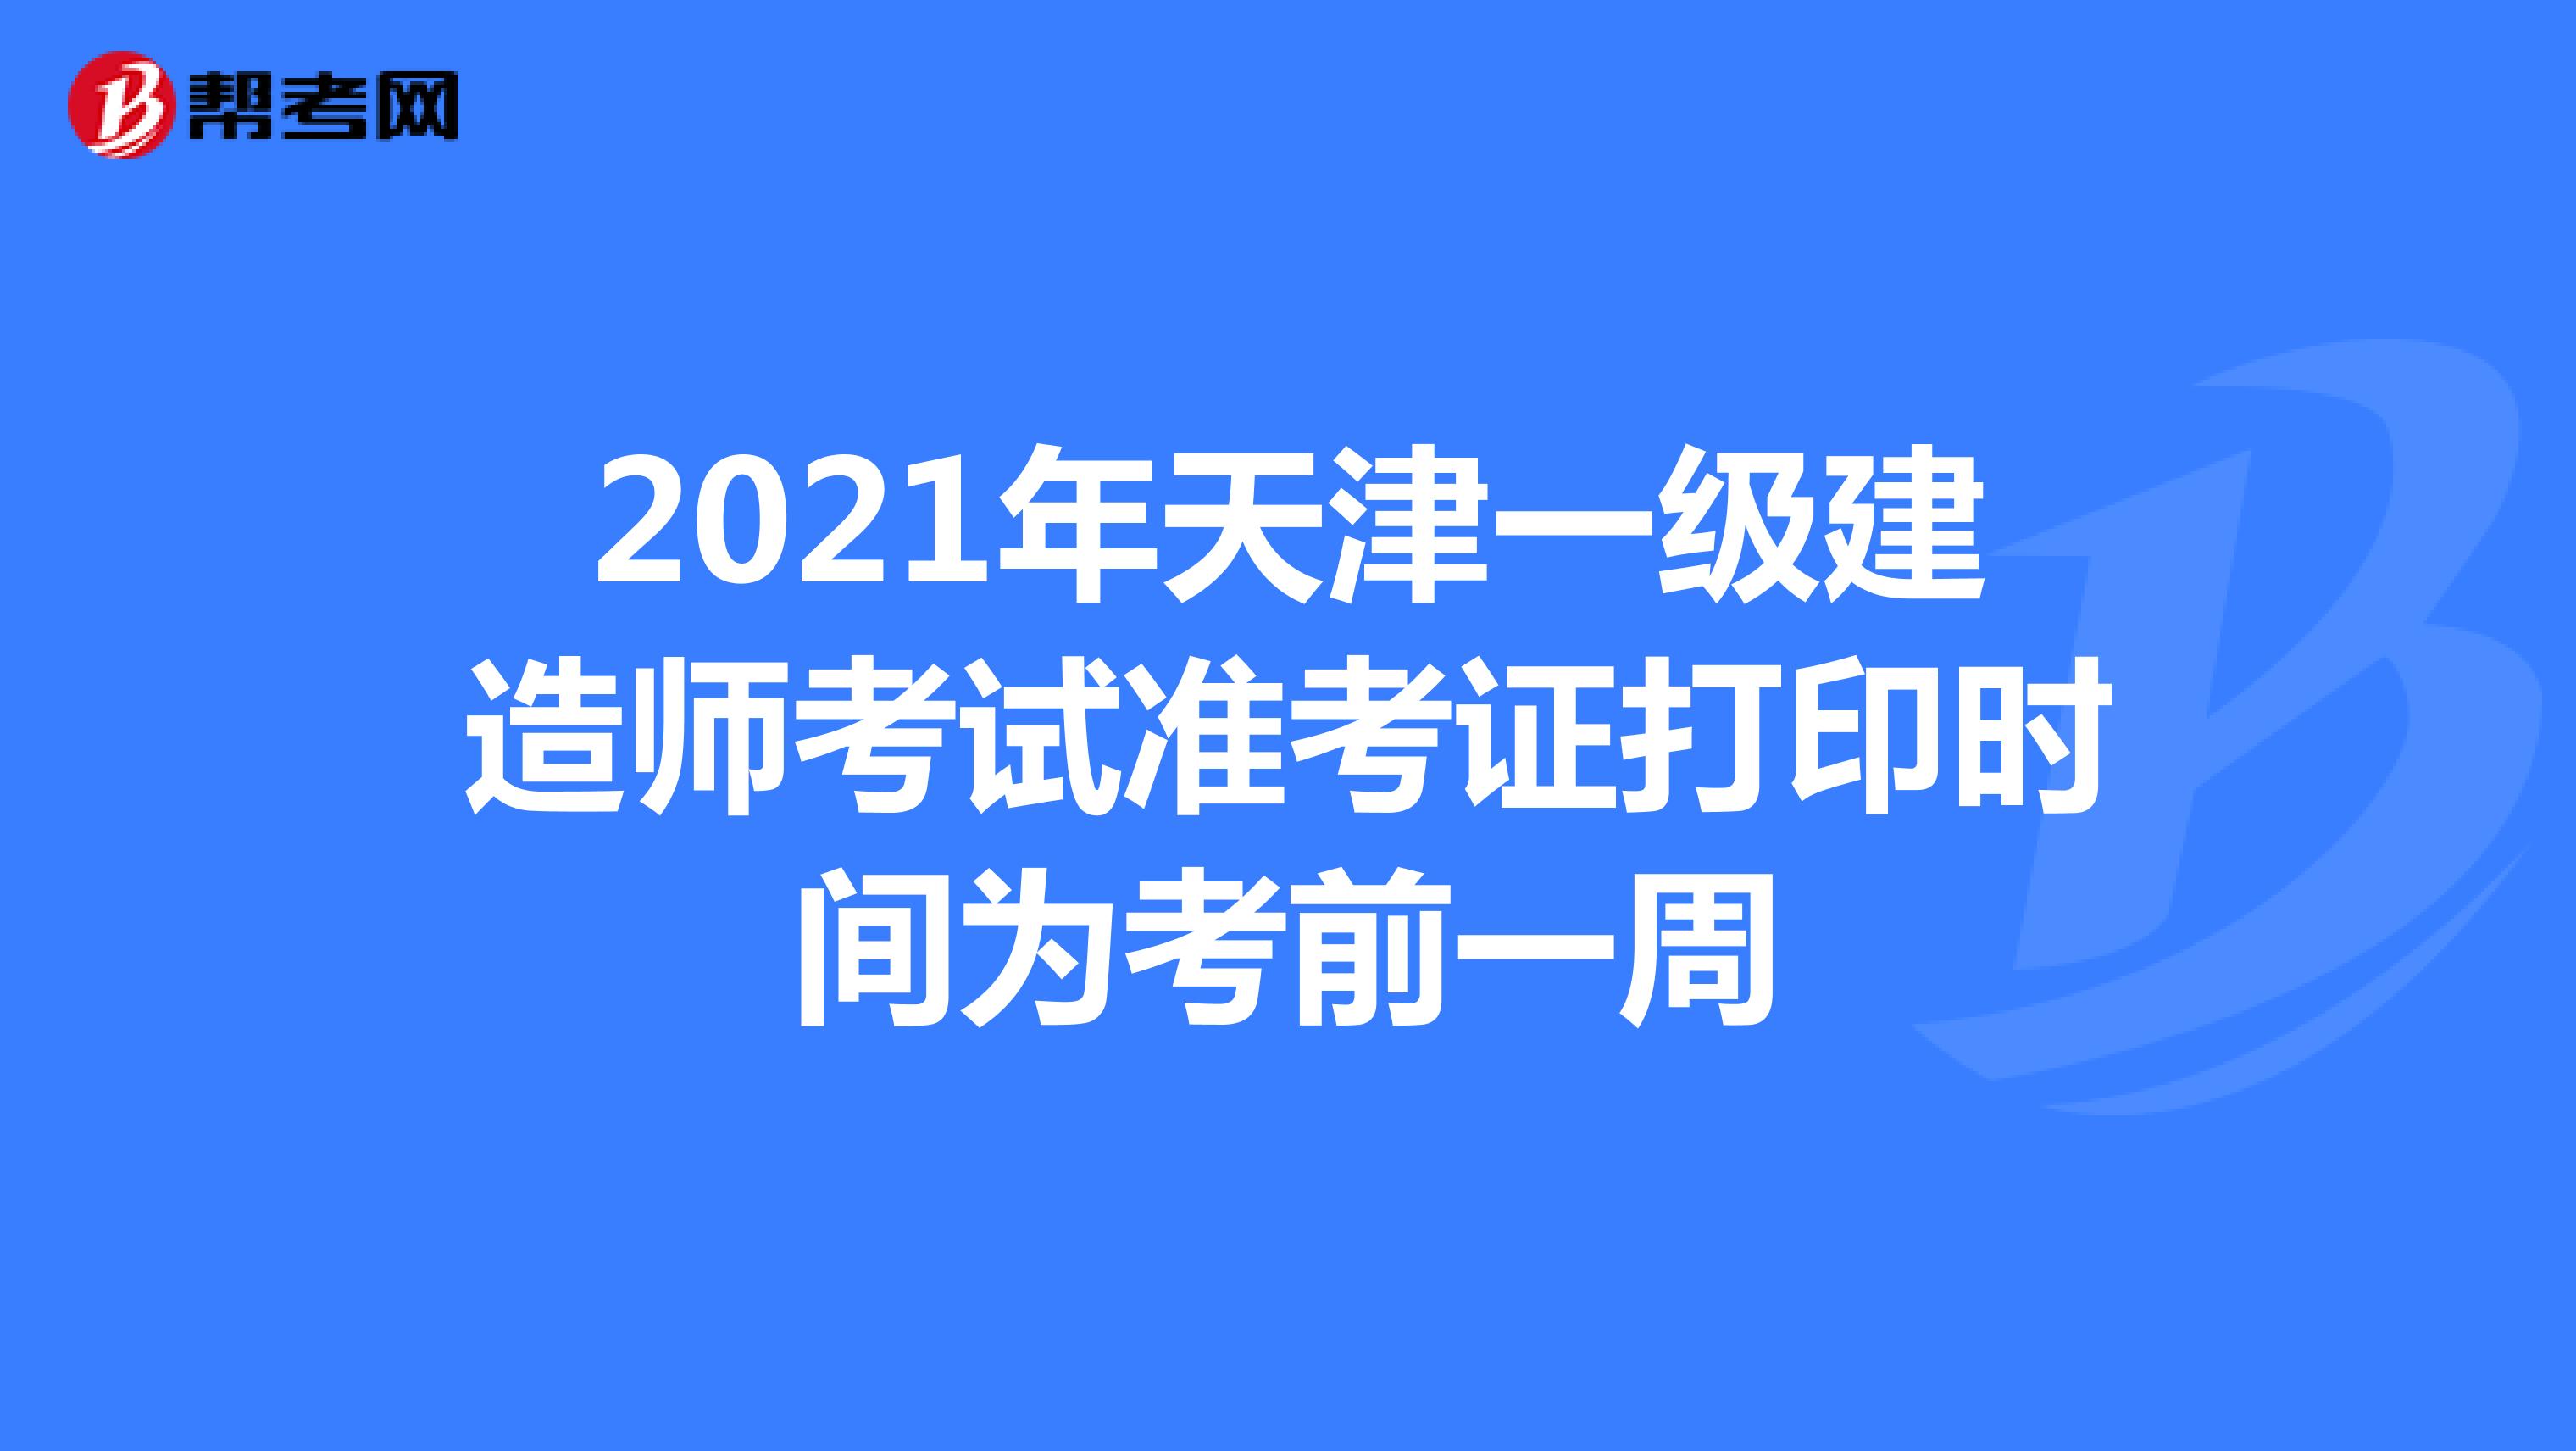 2021年天津一级建造师考试准考证打印时间为考前一周